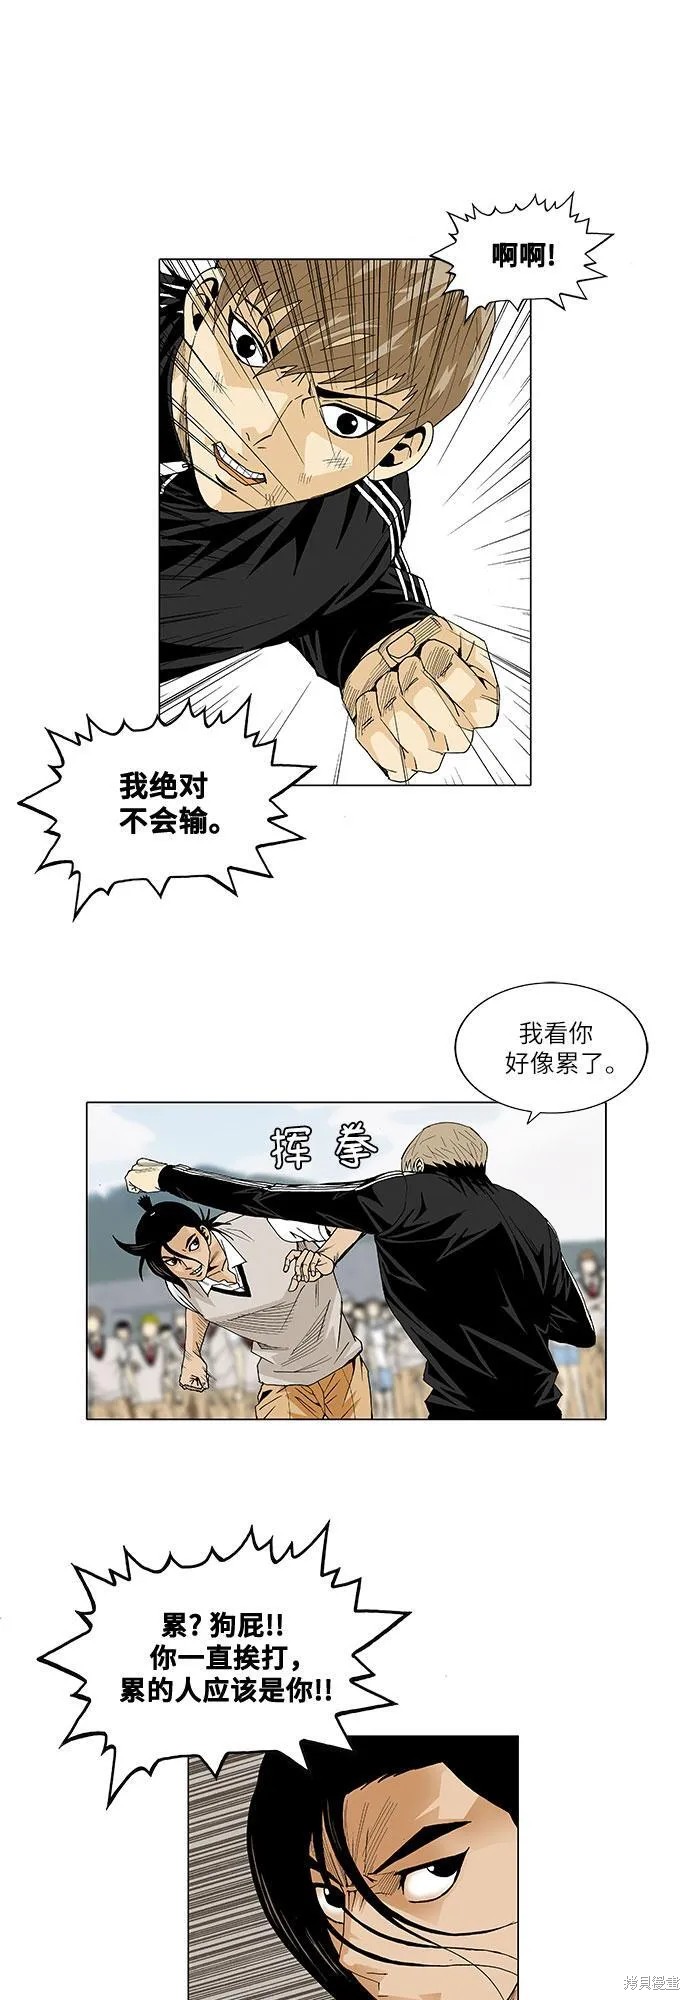 最强传说姜海孝漫画,第23话19图